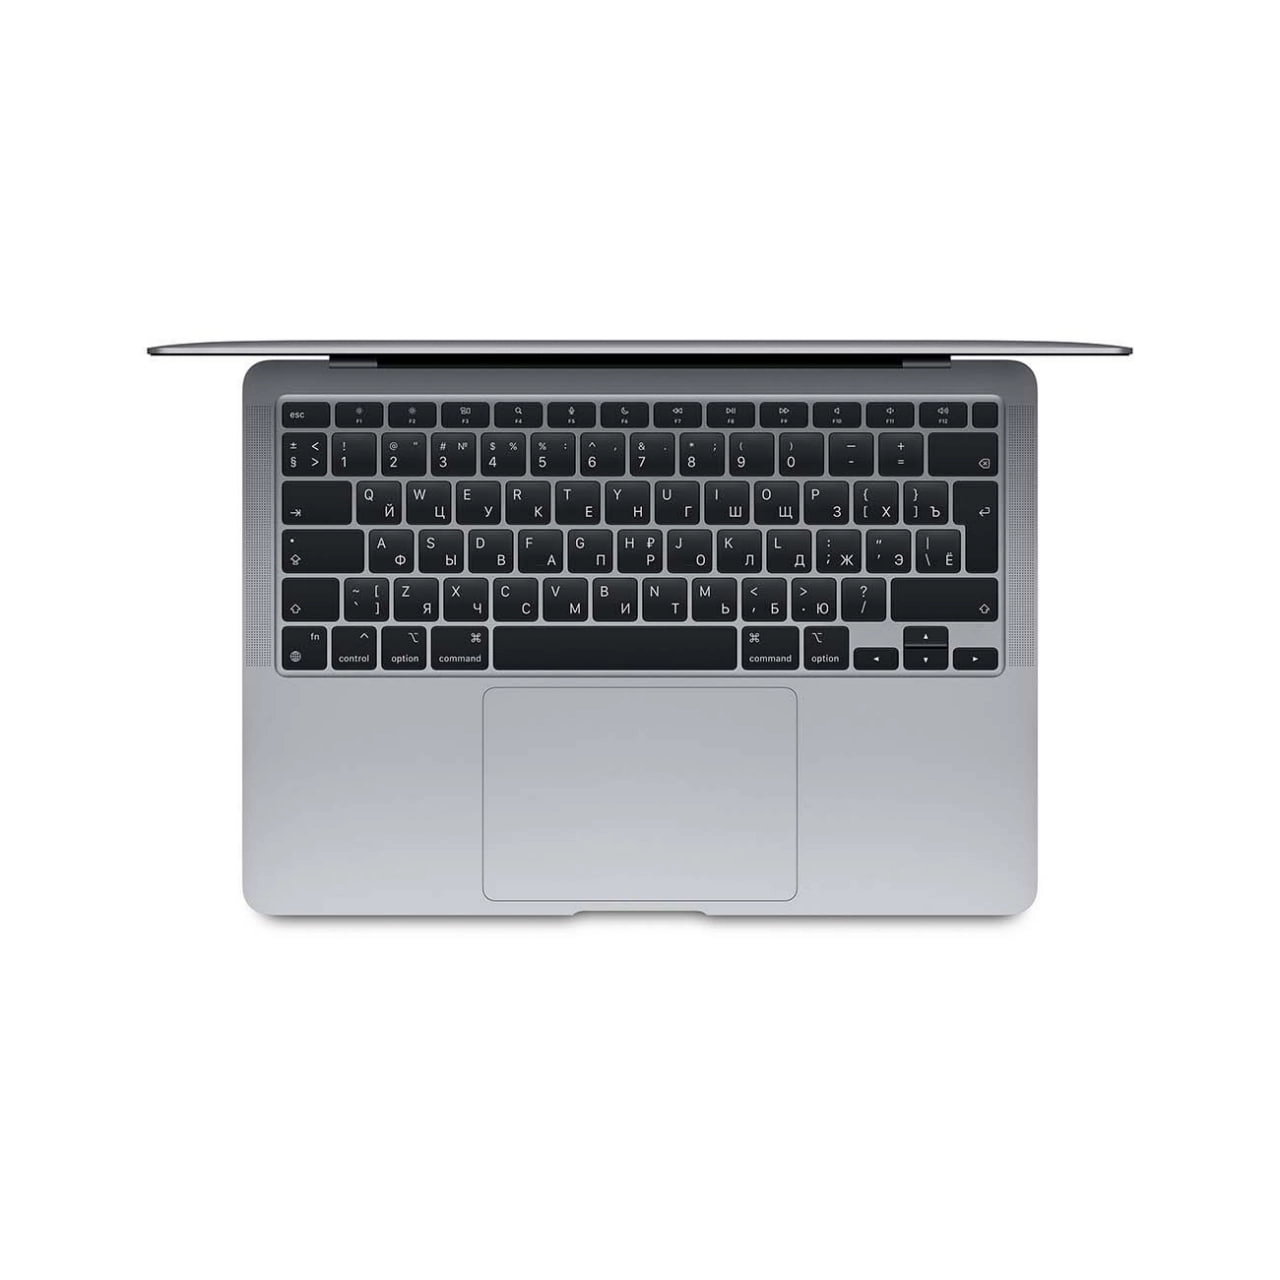 APPLE MacBook Air 13.3